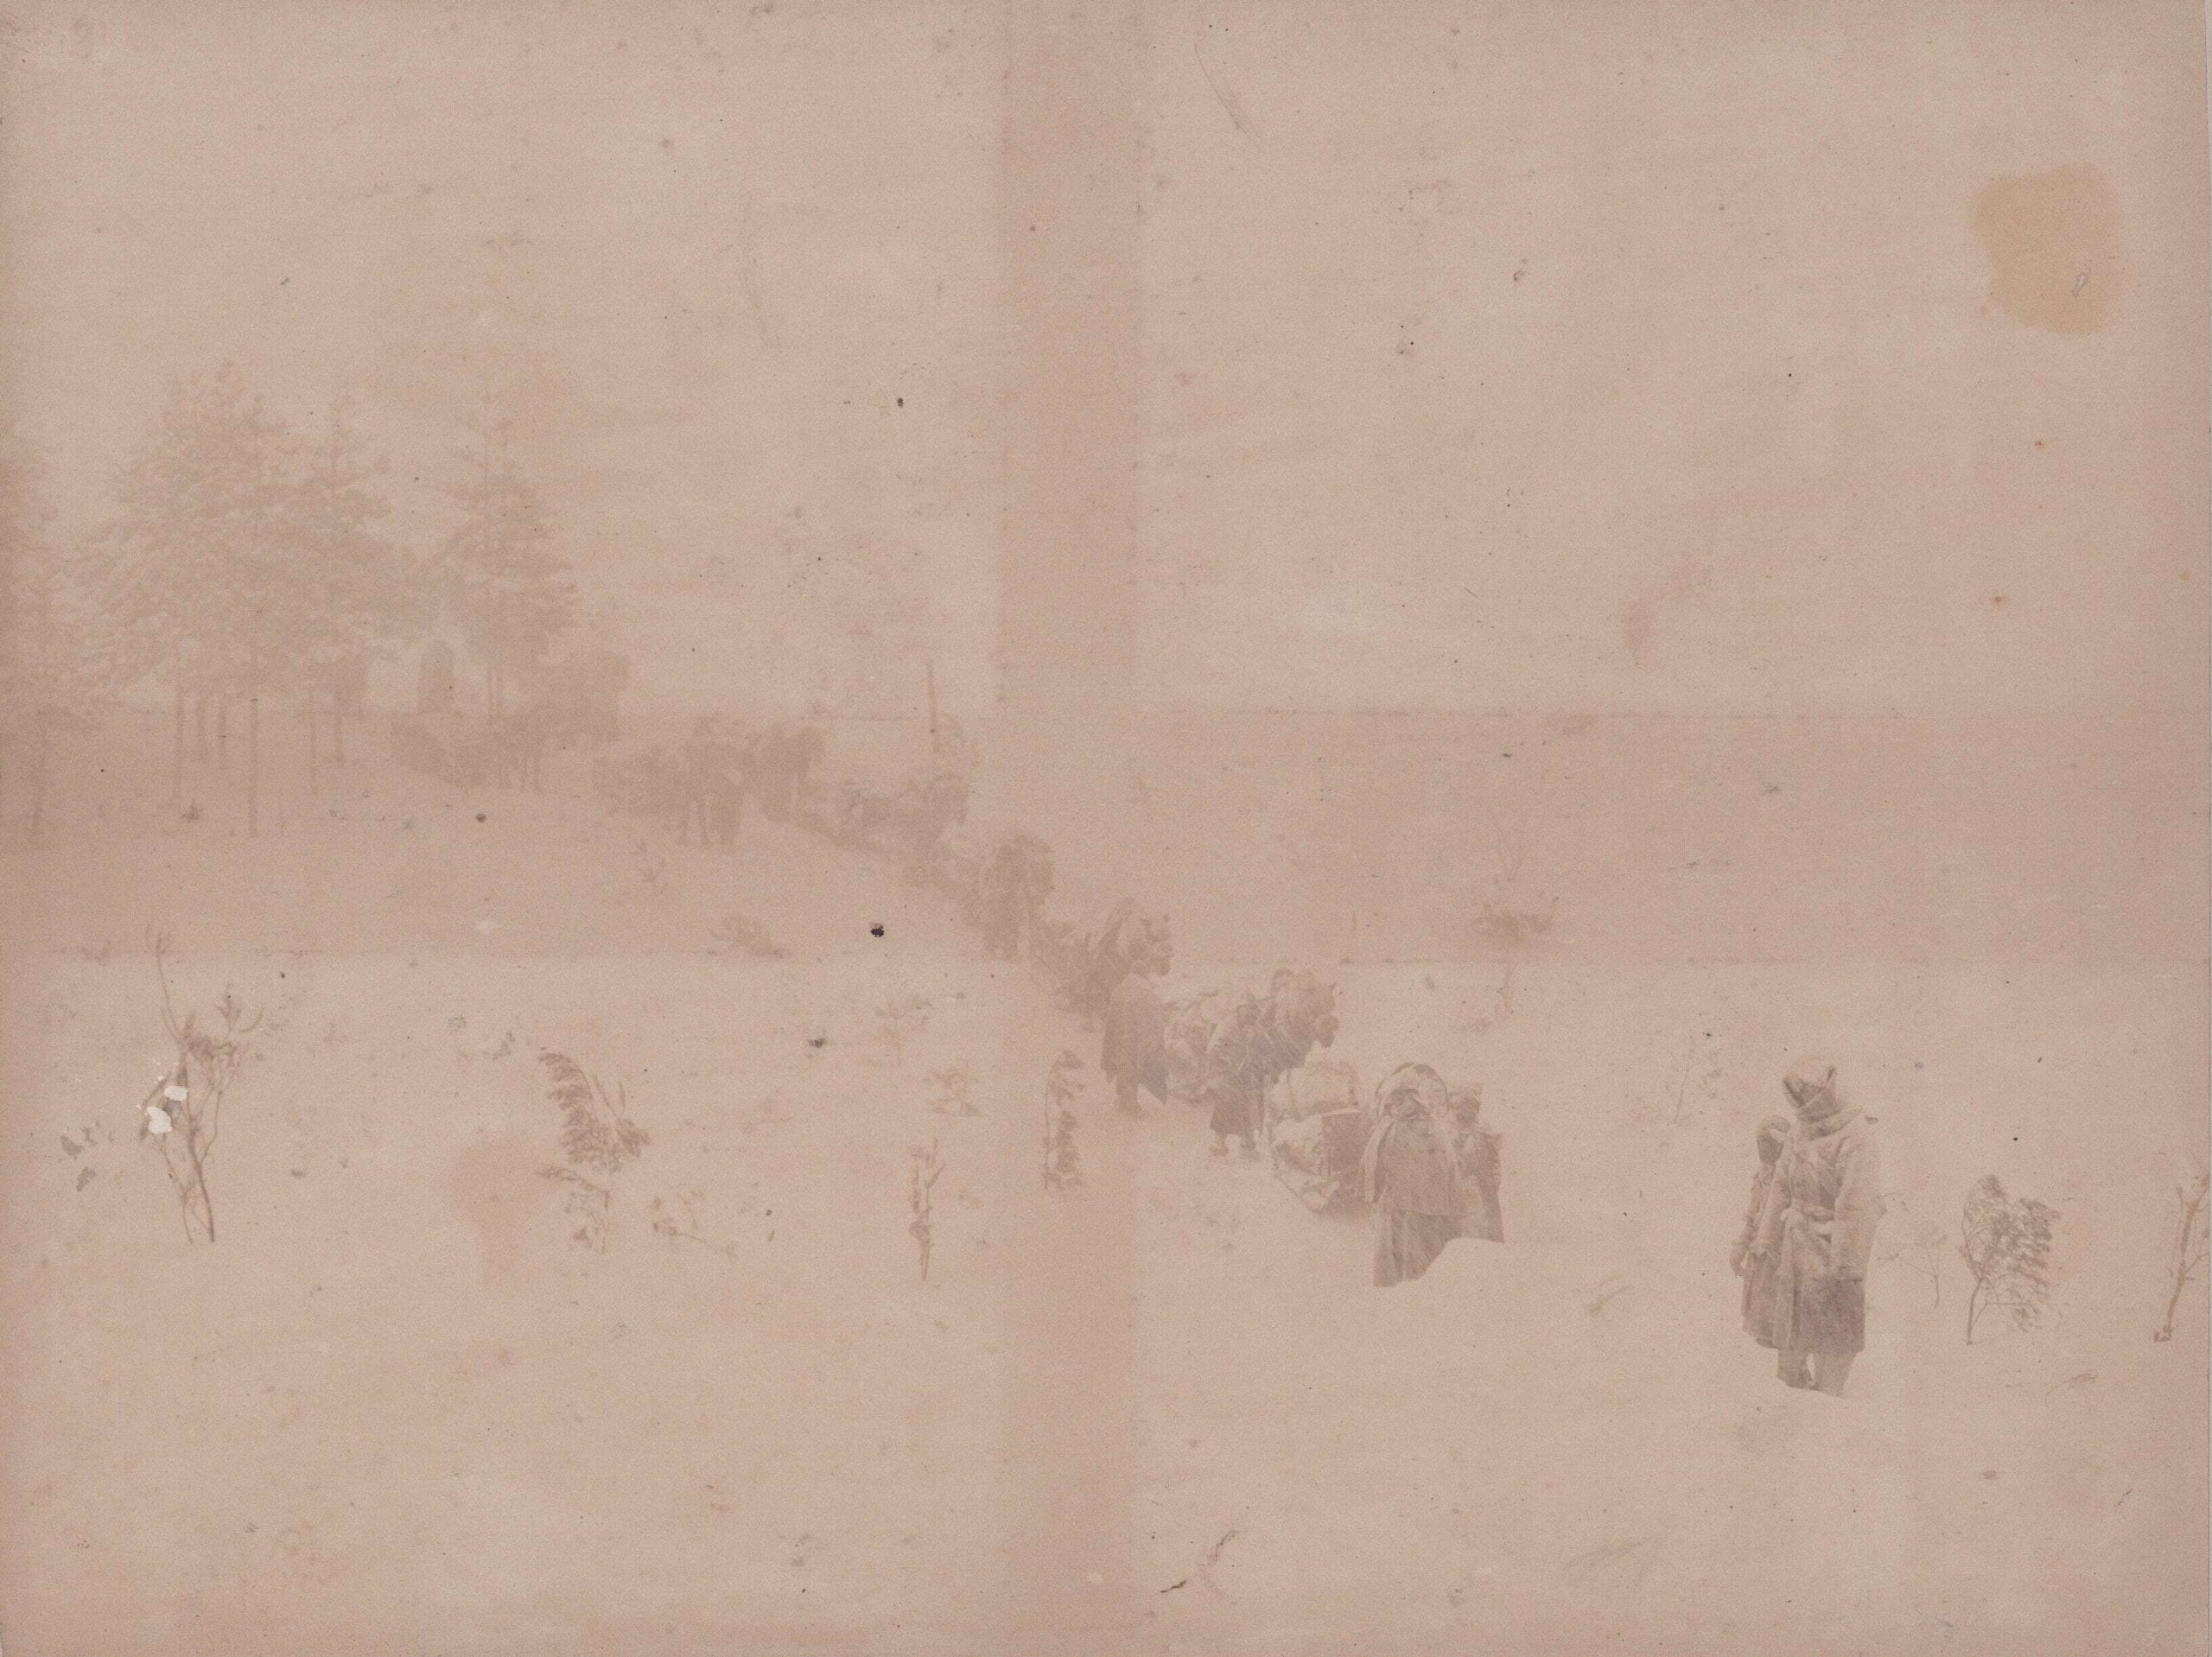 馬橇ニテ貨物運搬の光景（（陸地測量部、1902）青森県立図書館デジタルアーカイブ ）の画像。